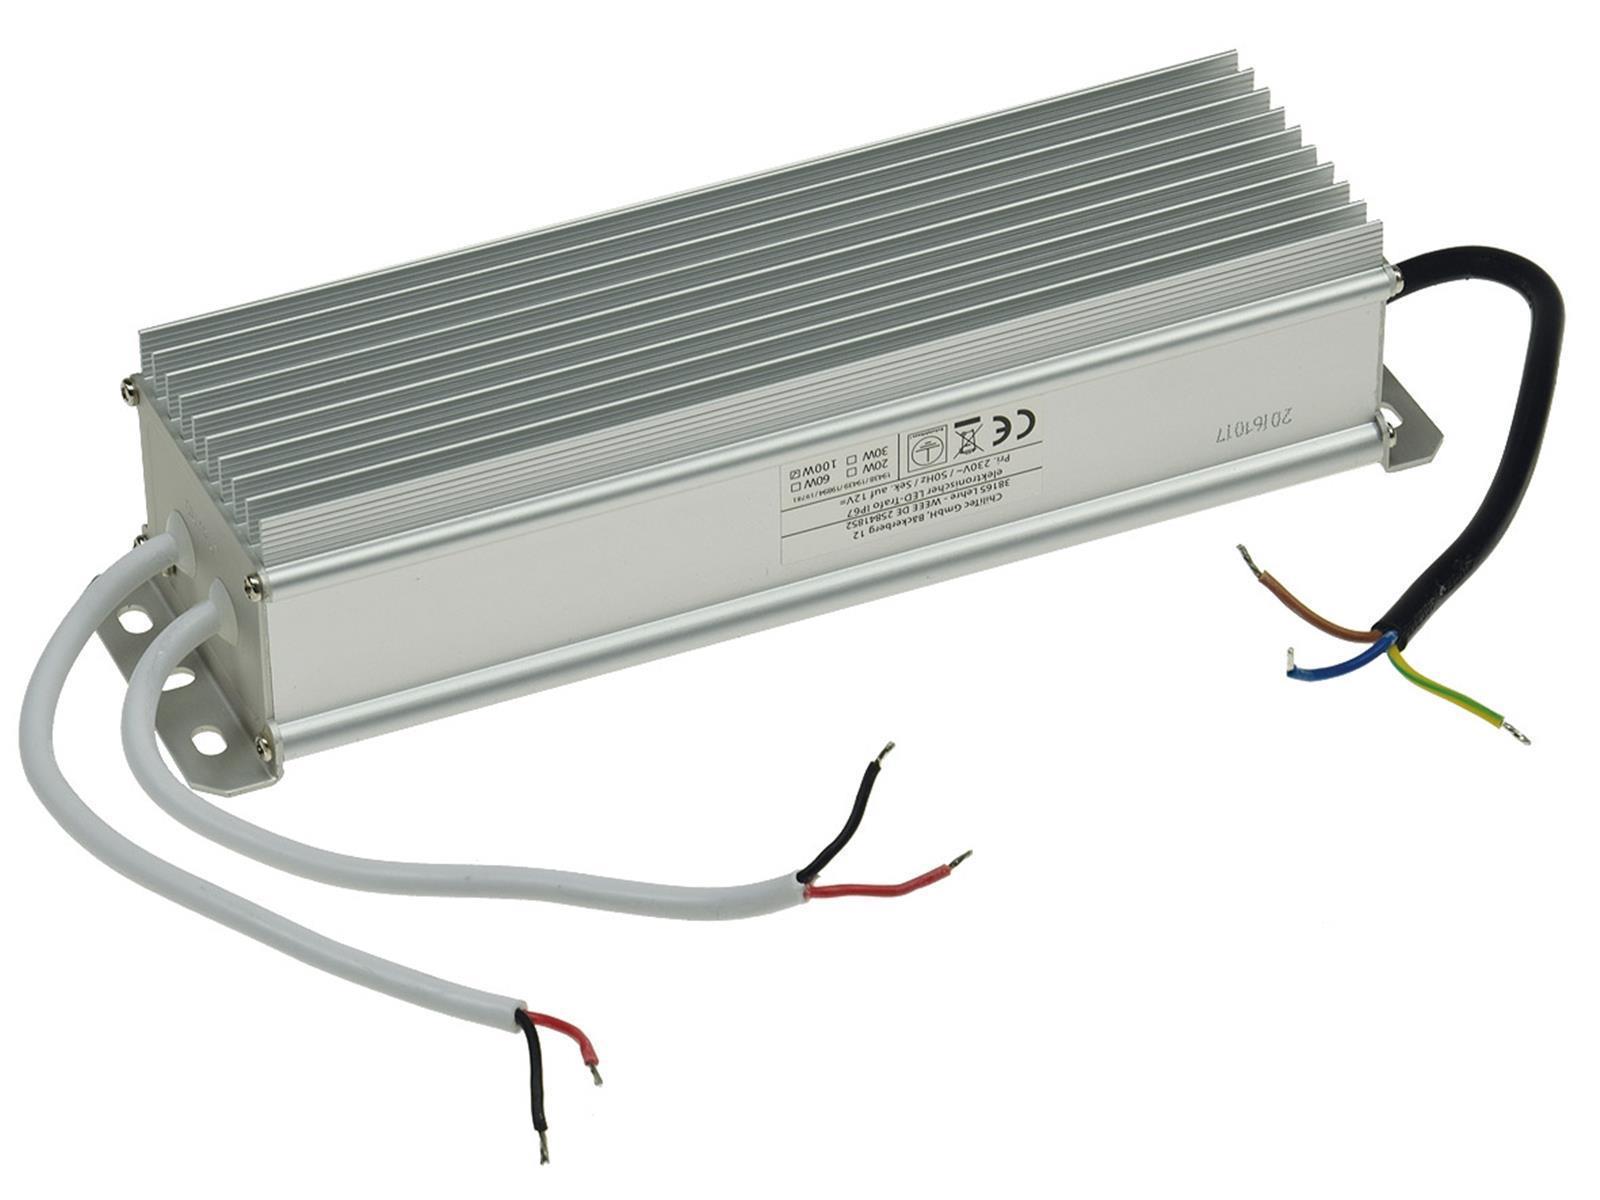 LED-Trafo IP67 wasserdicht, 1-99WEin 220-240V, Aus 12V= Konstantspannung